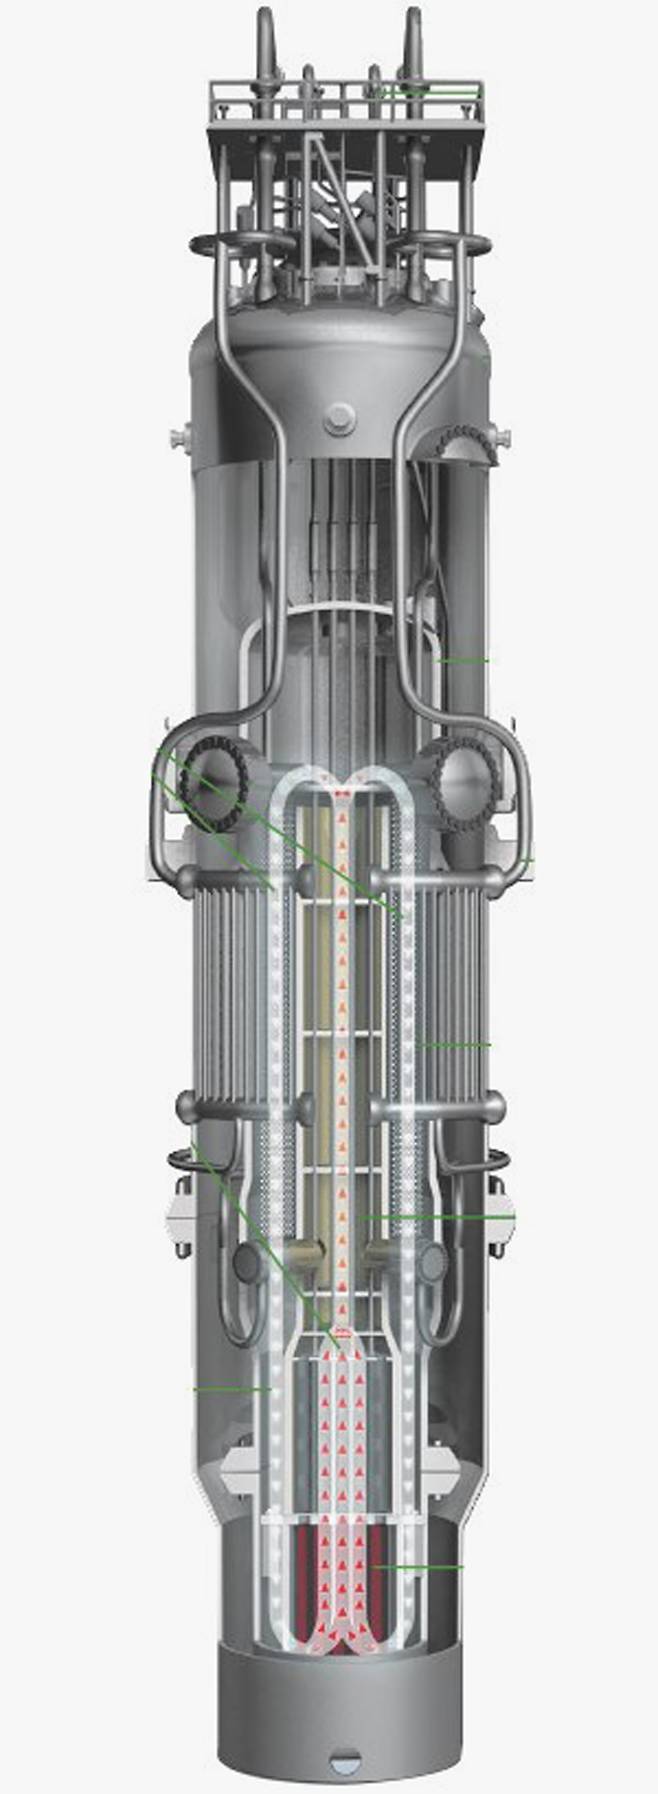 소형 원자로 개발 분야에서 선도 기업으로 꼽히는 미국 ‘뉴스케일’의 소형모듈원자로(SMR) 설계도. /뉴스케일 파워